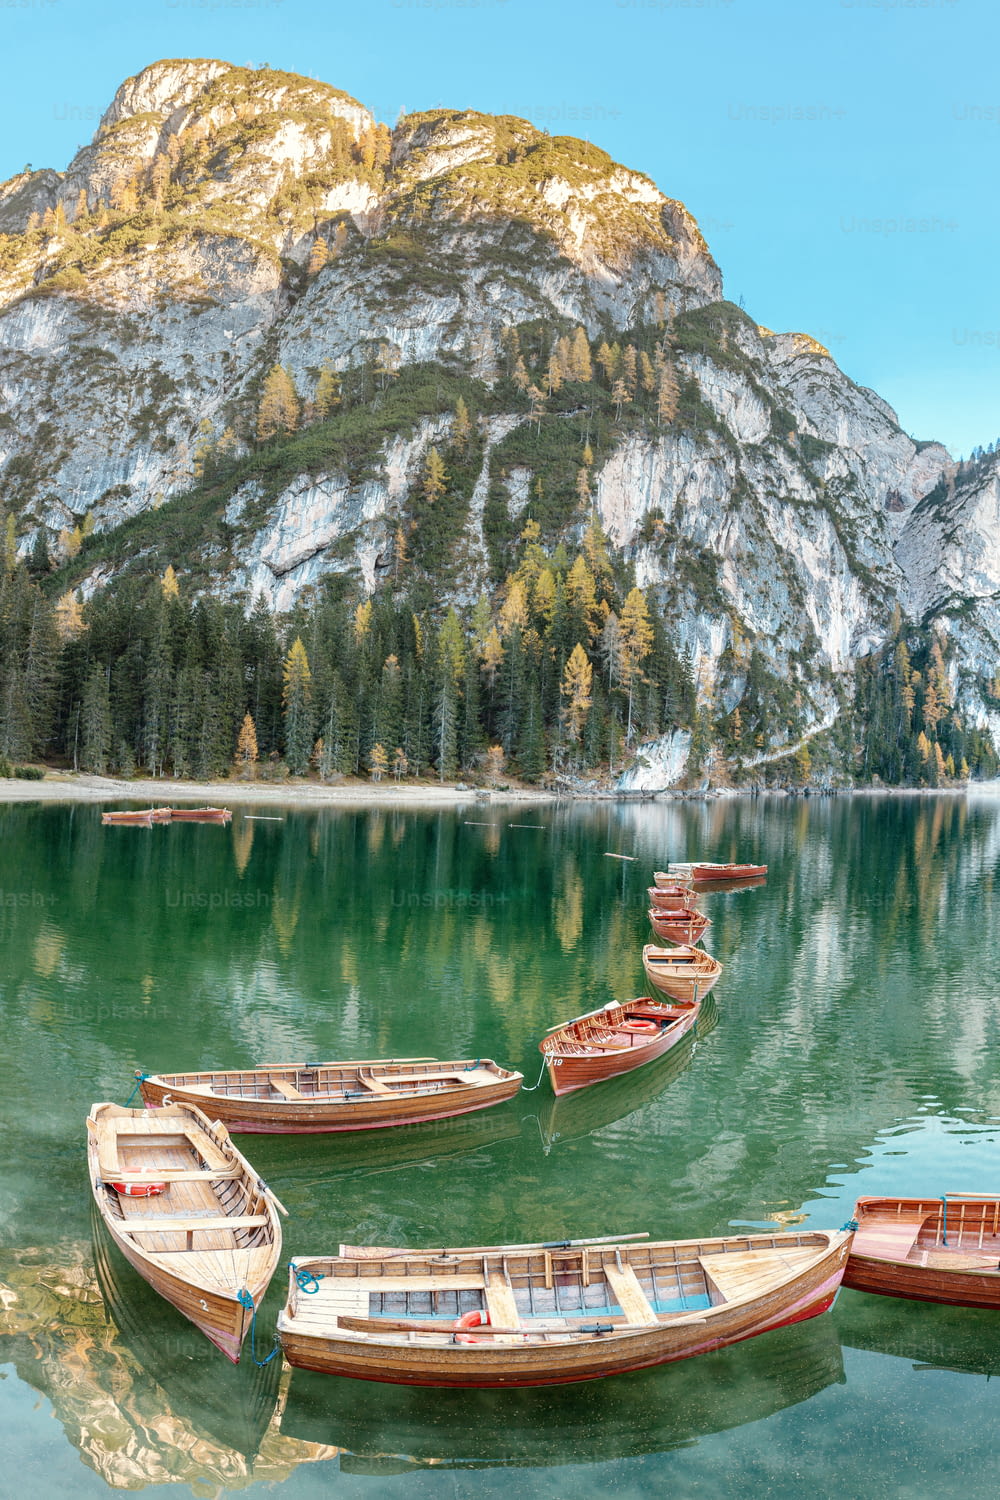 Un paysage panoramique magique aux couleurs calmes du célèbre lac de Braies dans les Alpes Dolomites pendant la saison d’automne. Une attraction touristique populaire